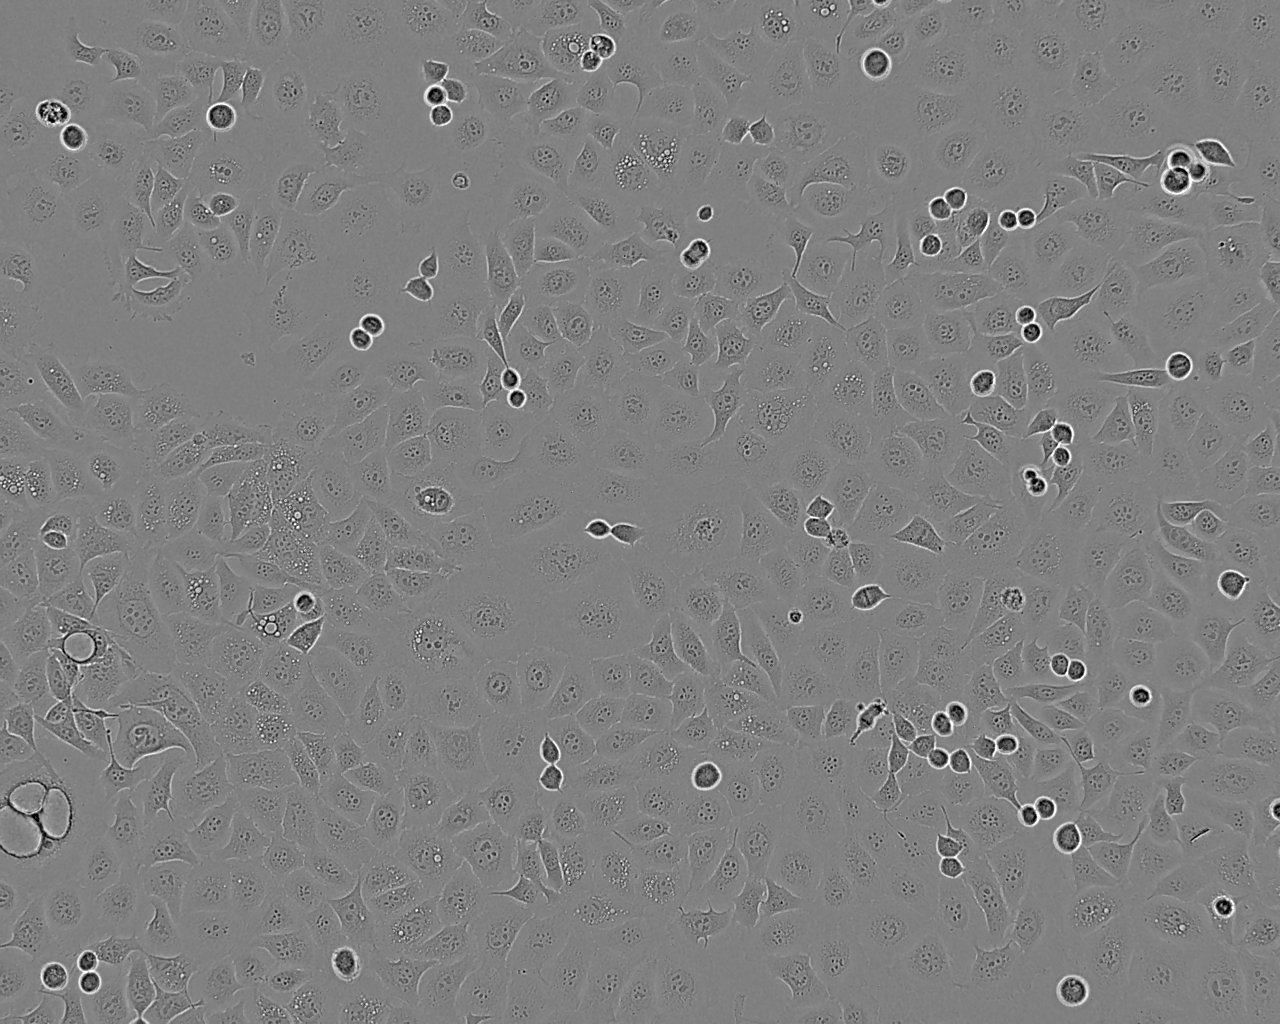 SW480细胞：人结肠癌细胞系,SW480